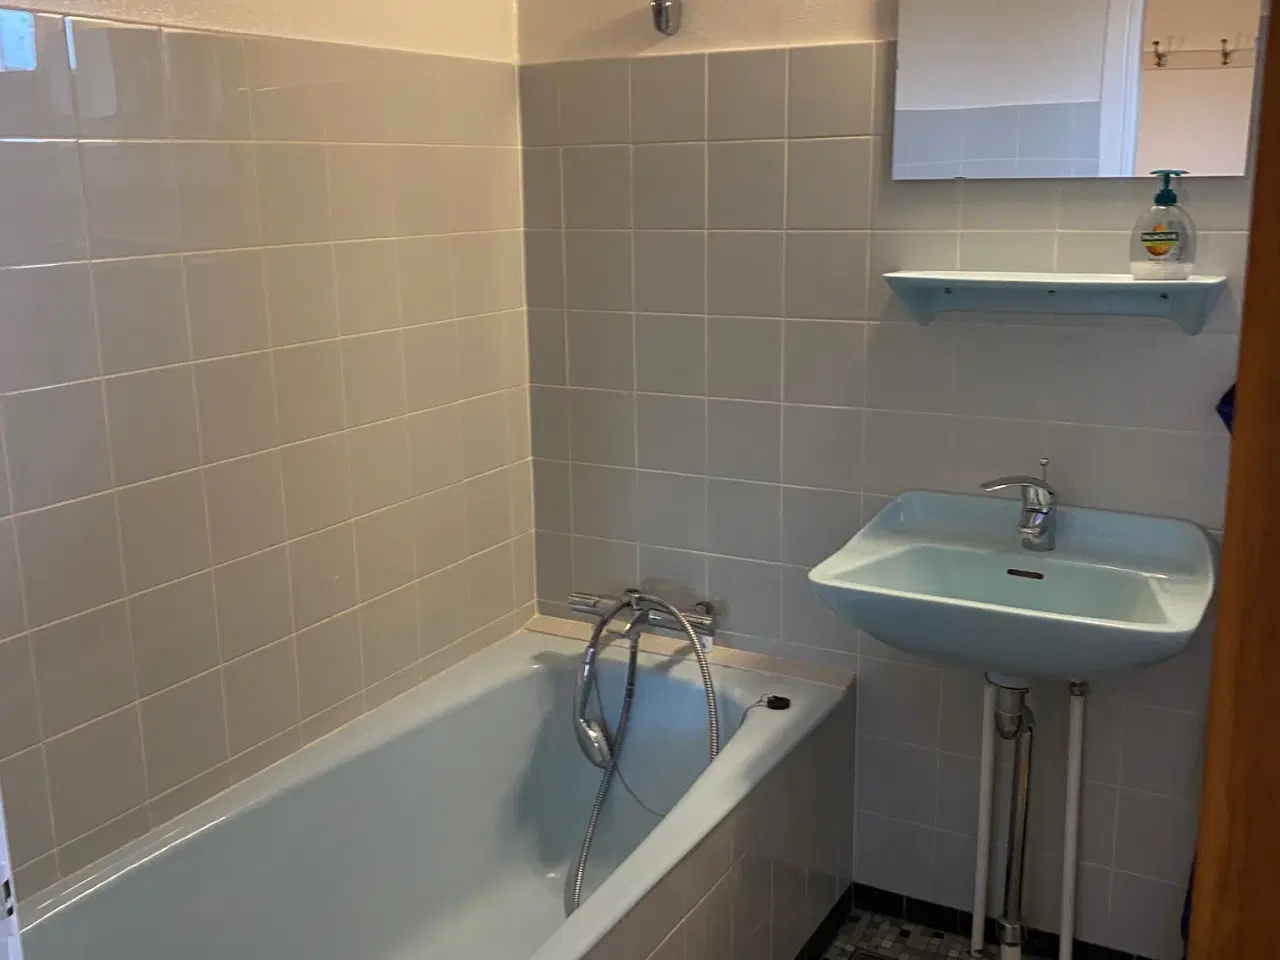 Billede 1 - retro badekar samt håndvask i lyseblå